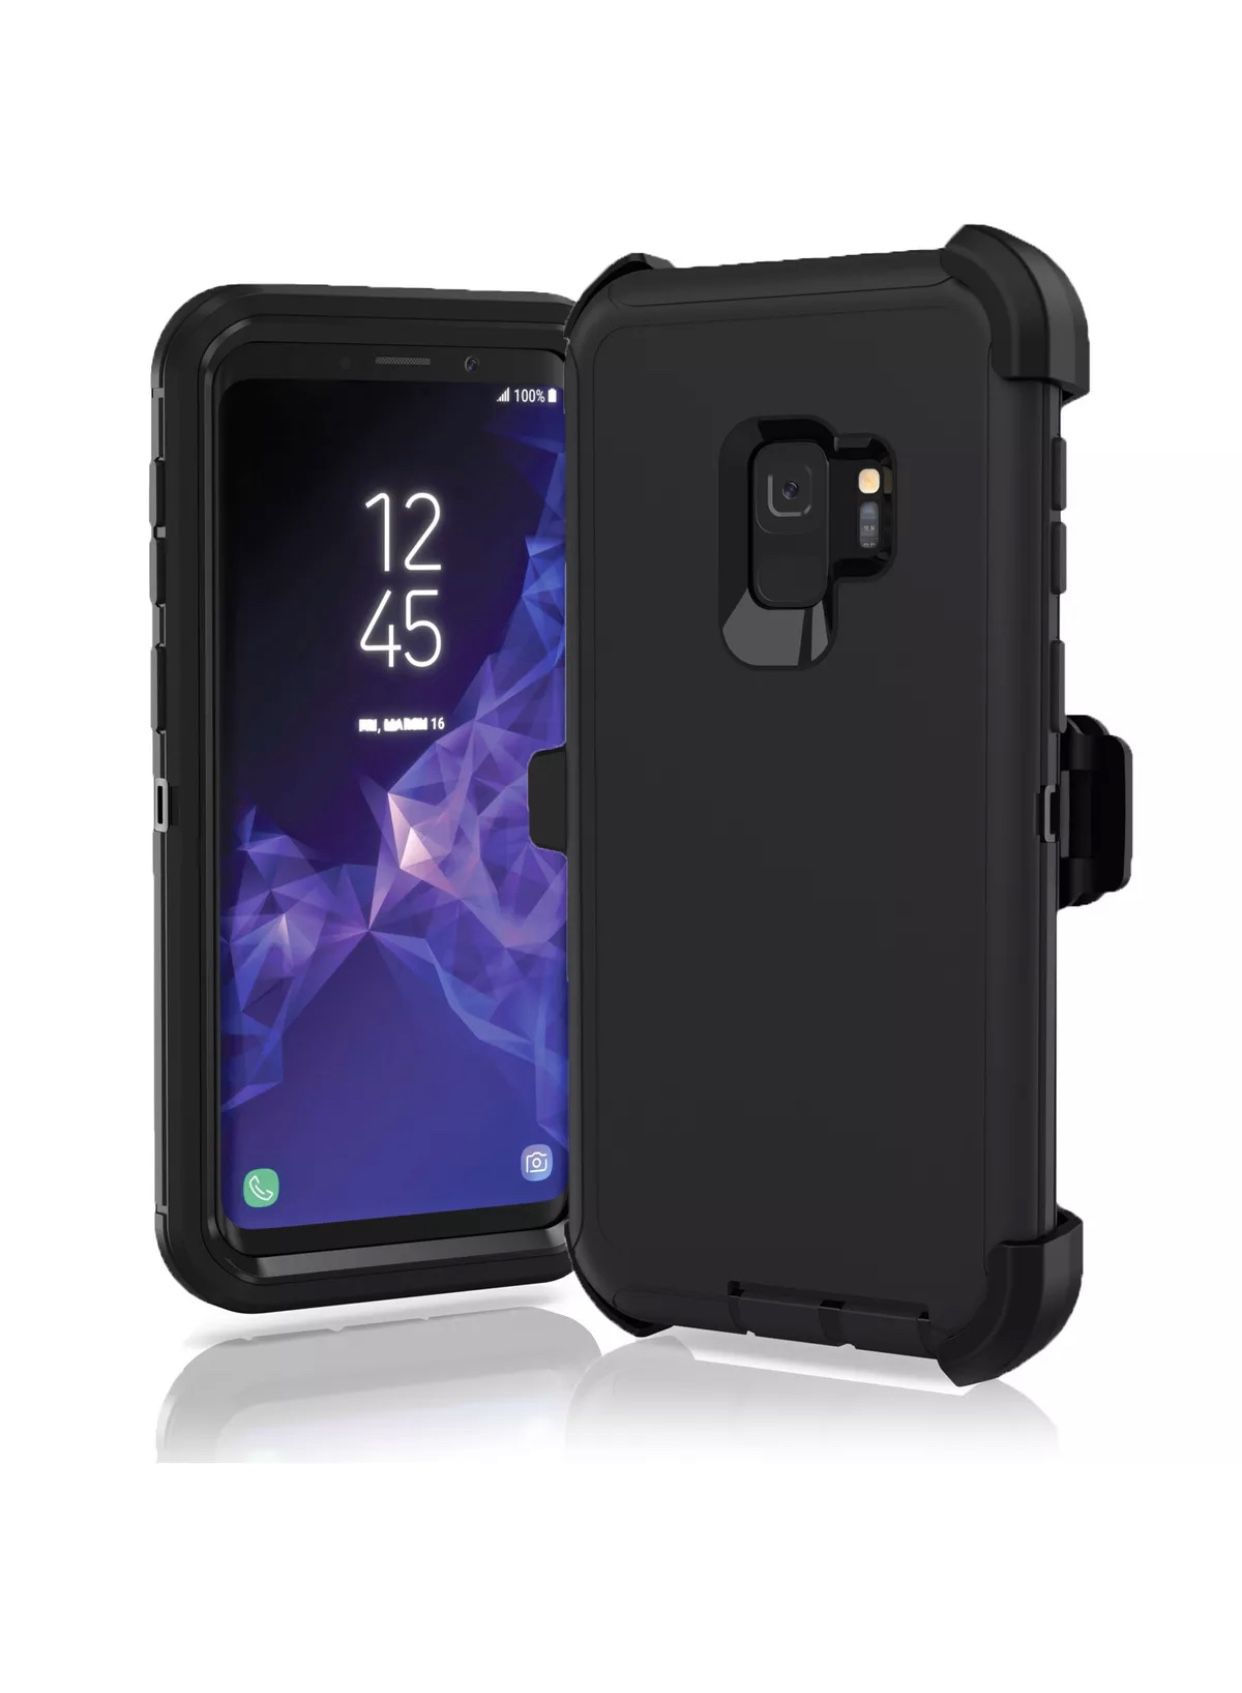 Samsung Galaxy s9 + defender type case